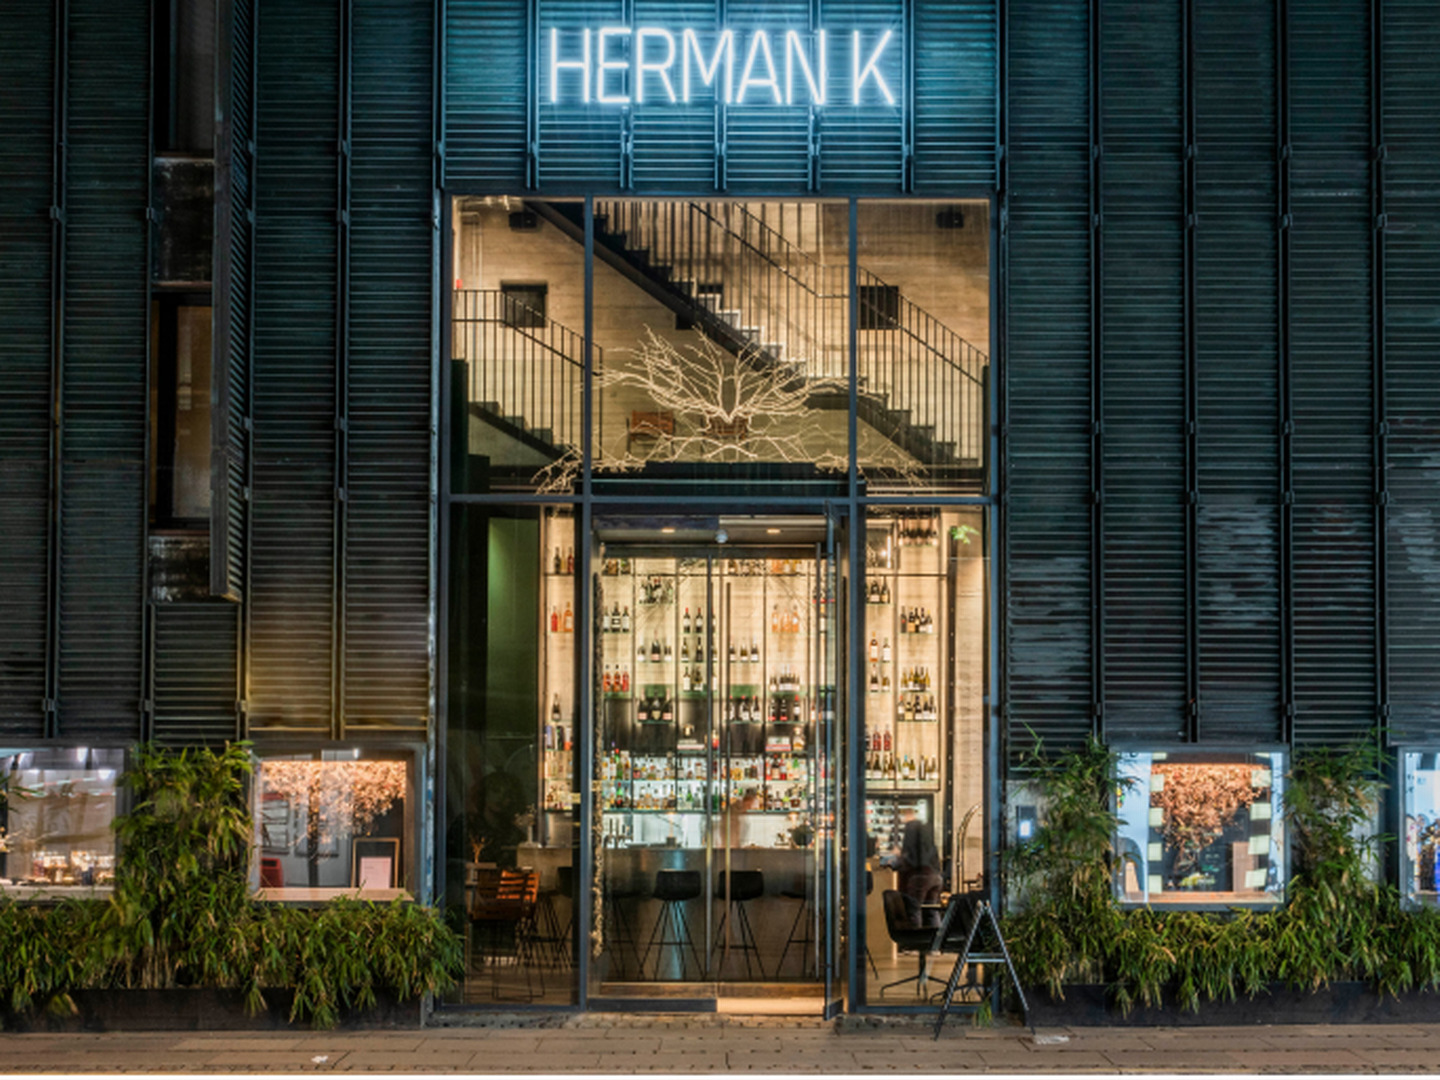 Luksushotellet Herman K, der i en periode har heddet The Socialist, får sit gamle navn tilbage, som den tidligere ejer, Brøchner-familien, benyttede, indtil nøglen måtte drejes i 2020 som følge af coronapandemien.